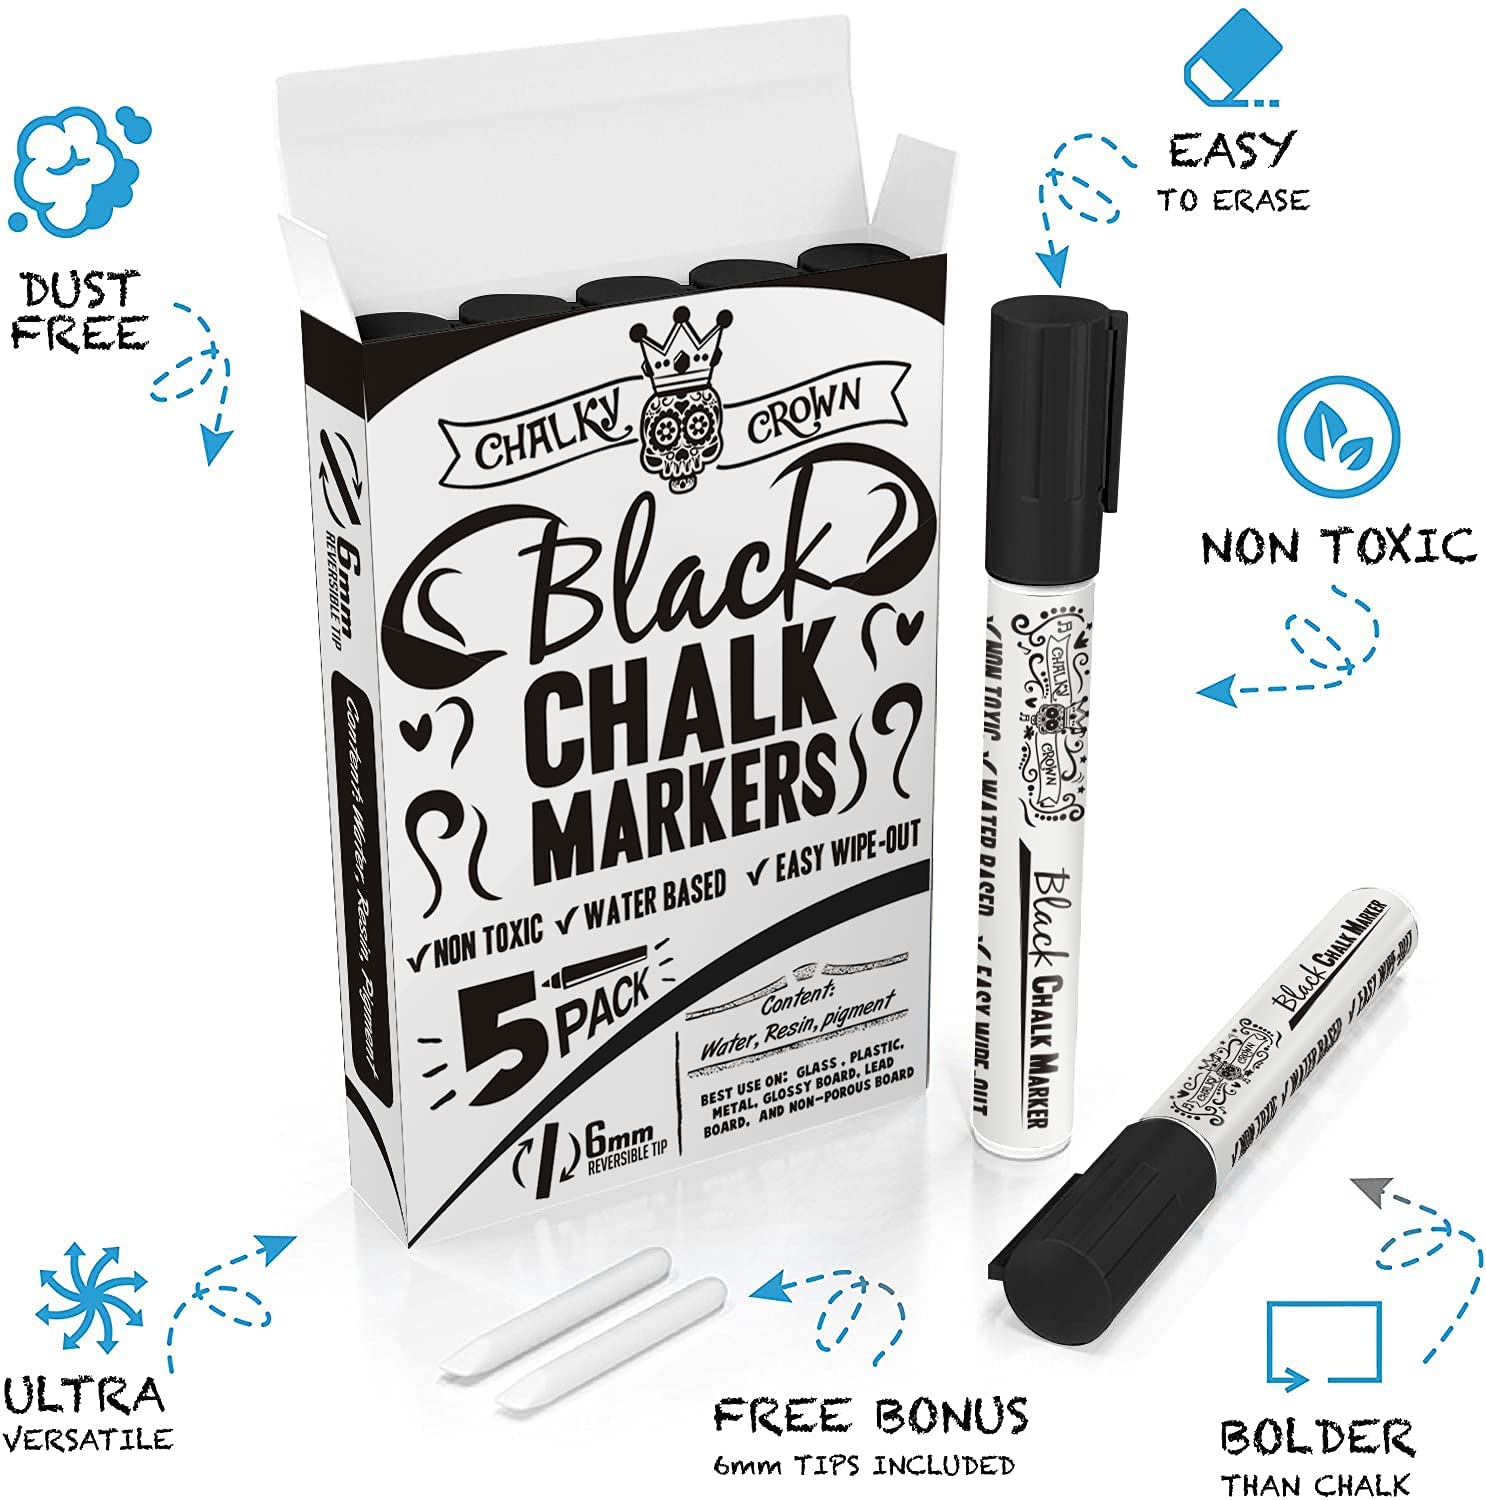 Liquid Chalk Marker Pen - Dry Erase Marker - Chalk Markers for Chalkboard Signs, Windows, Blackboard, Glass - 6mm Reversible Tip - 24 Chalkboard